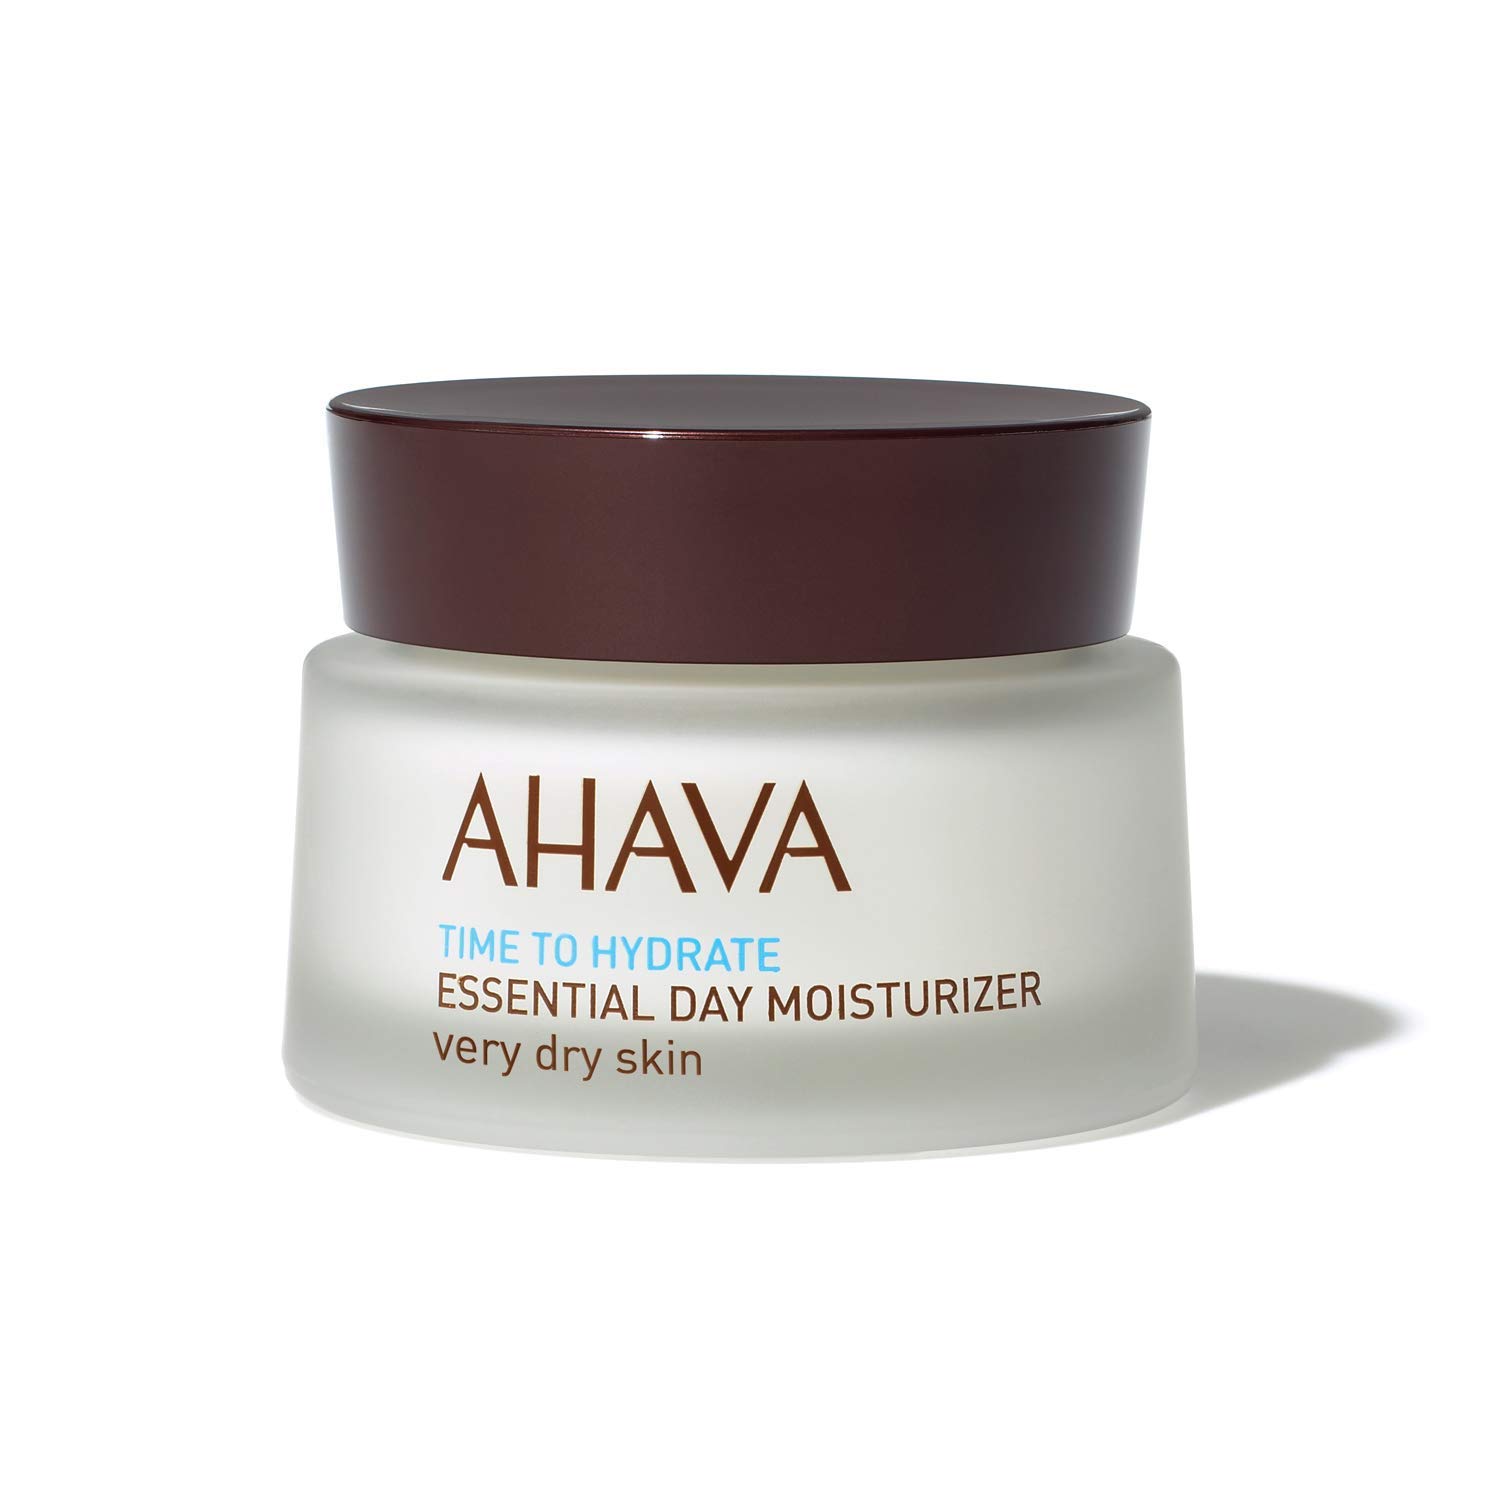 AHAVA Essential Day Moisturizer Gesichtscreme - Feuchtigkeitspflege für den Tag mit Mineralien aus dem Toten Meer - 50ml